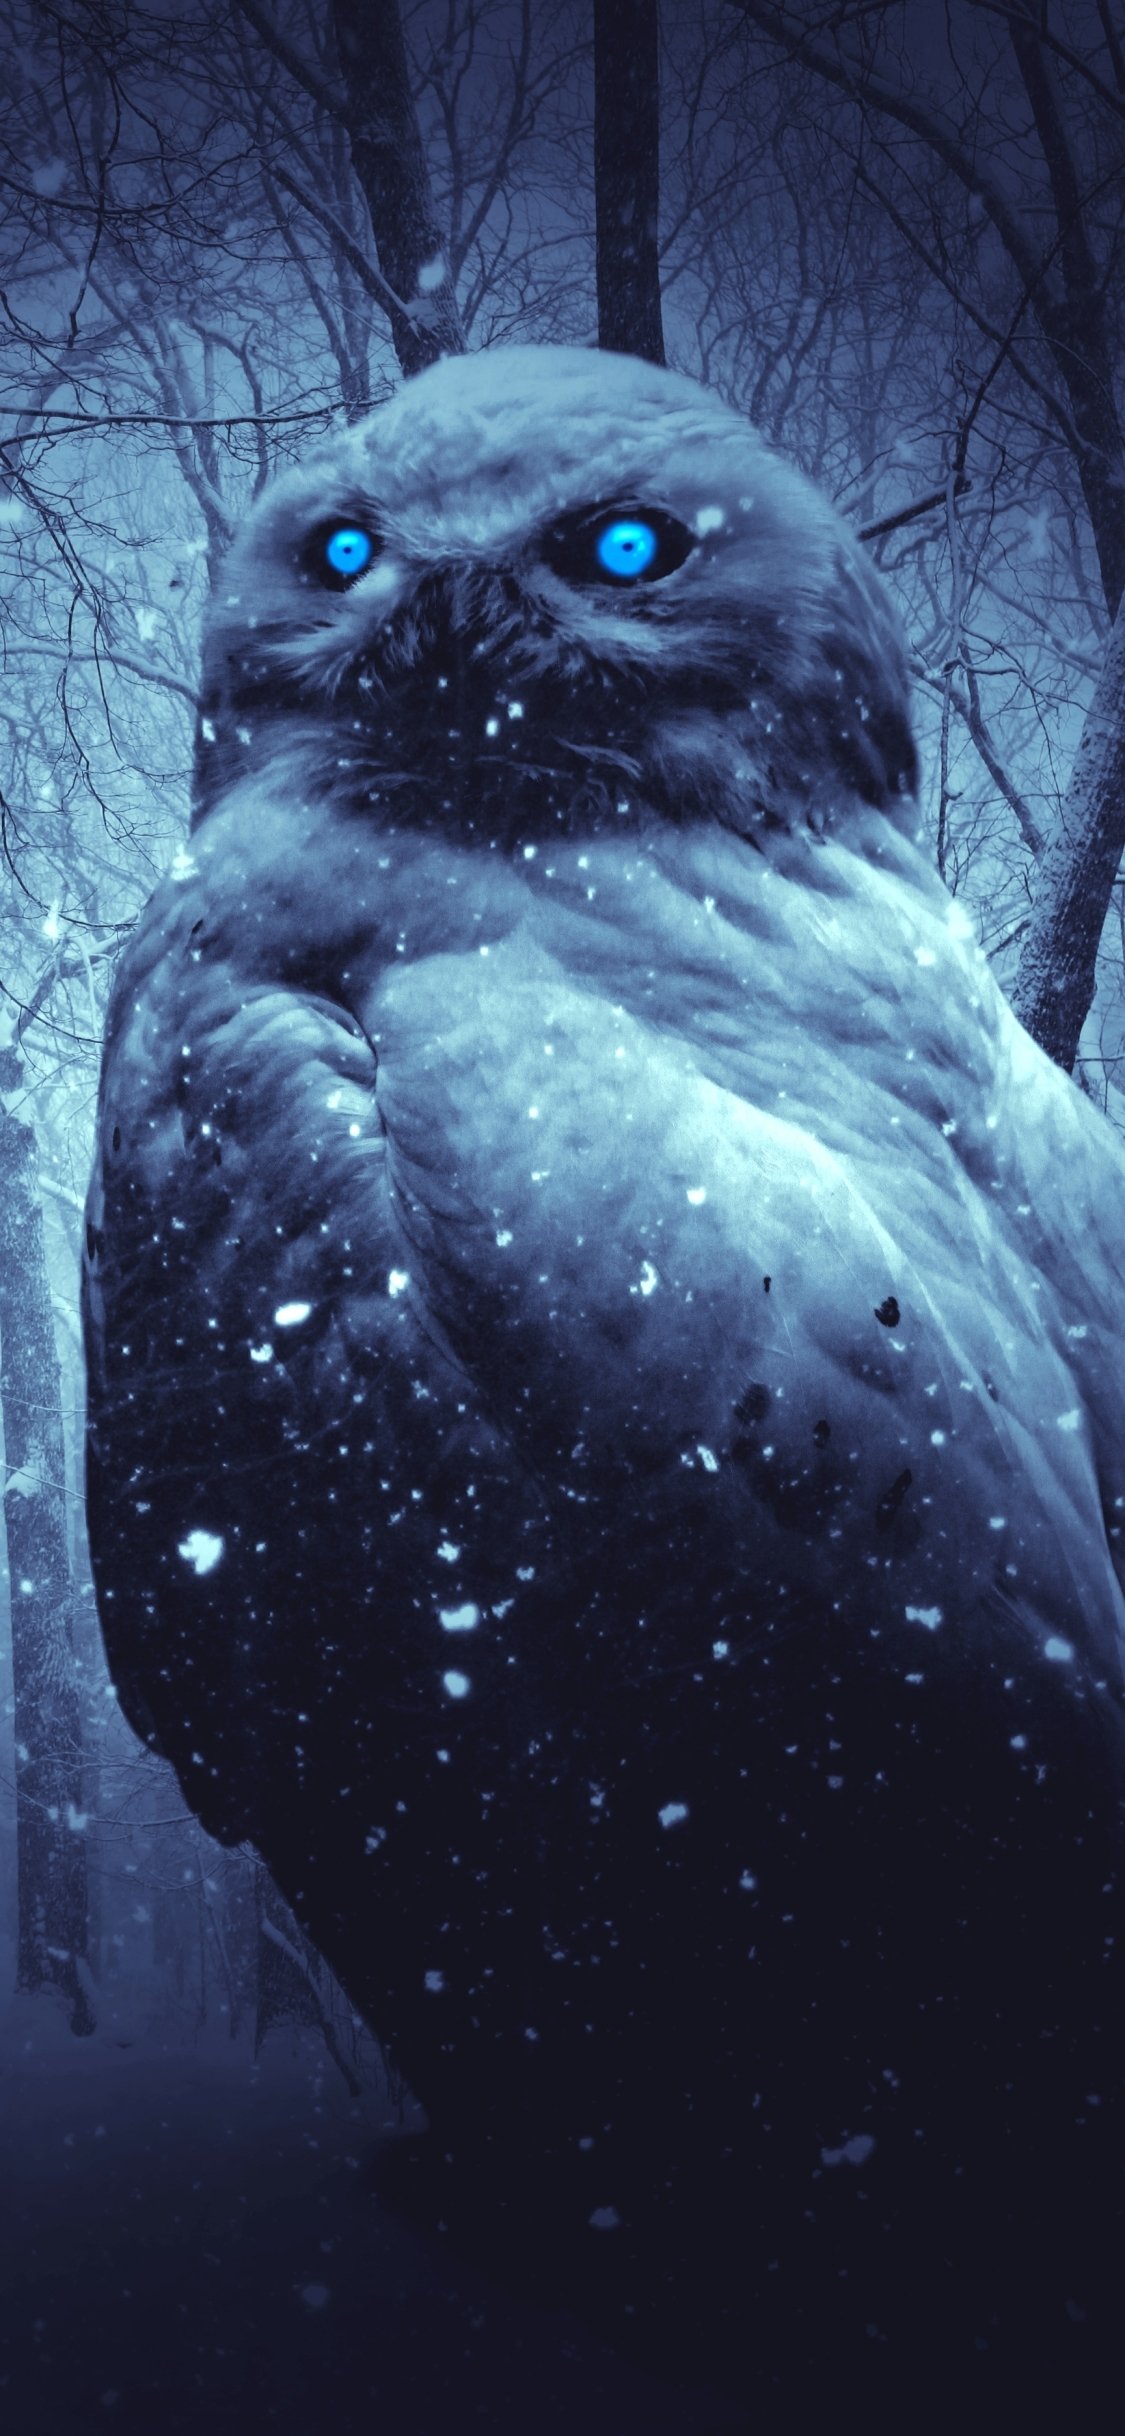 Owl In A Dark Winter Forest